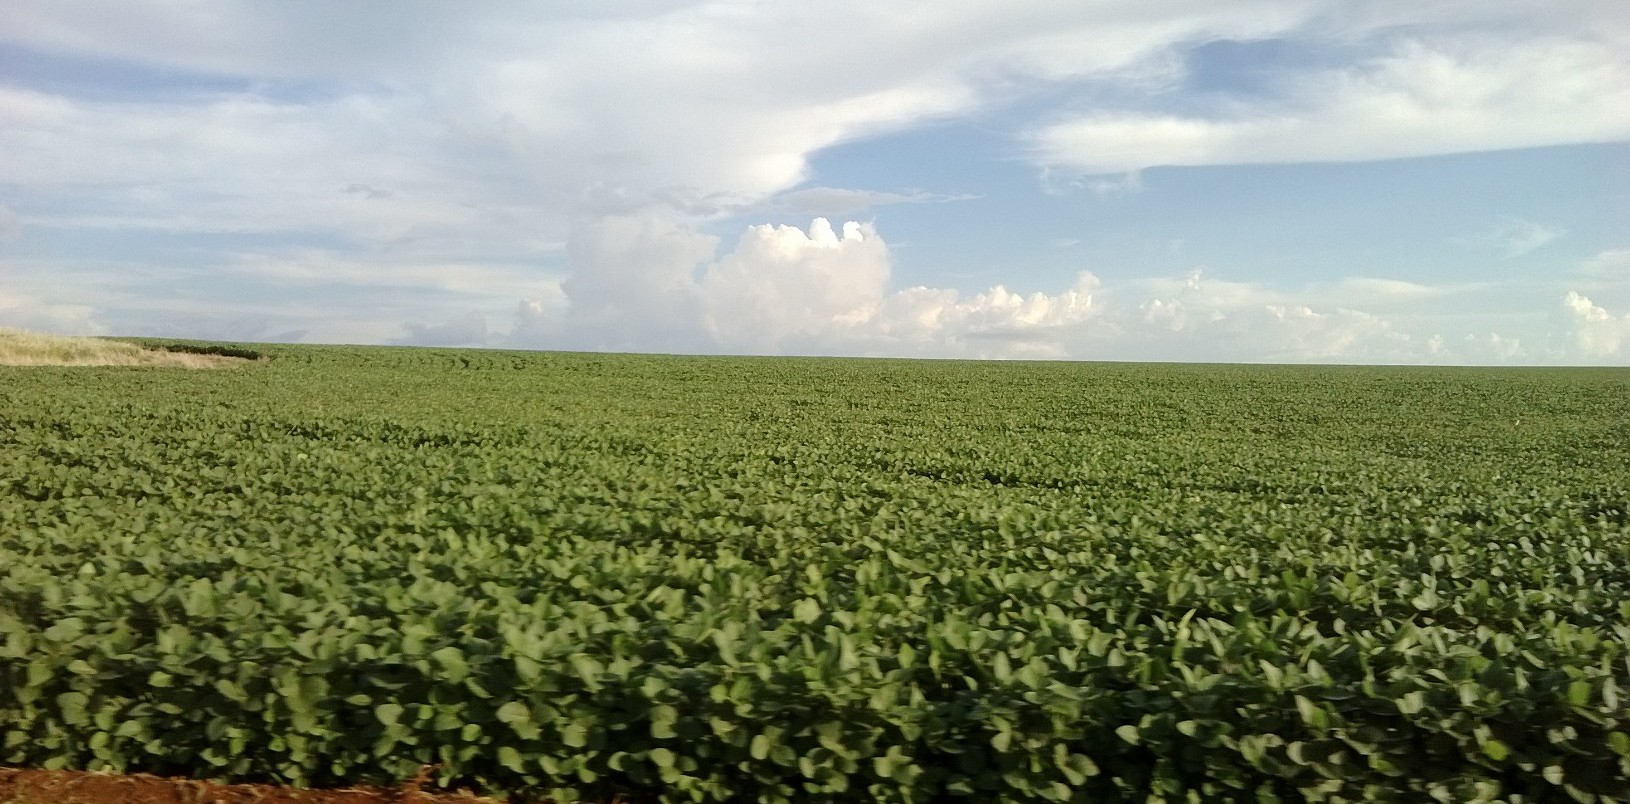 Incremento foi de 10% na área dedicada ao cultivo do grão (Foto: ELI MORAIS DE BRITES)